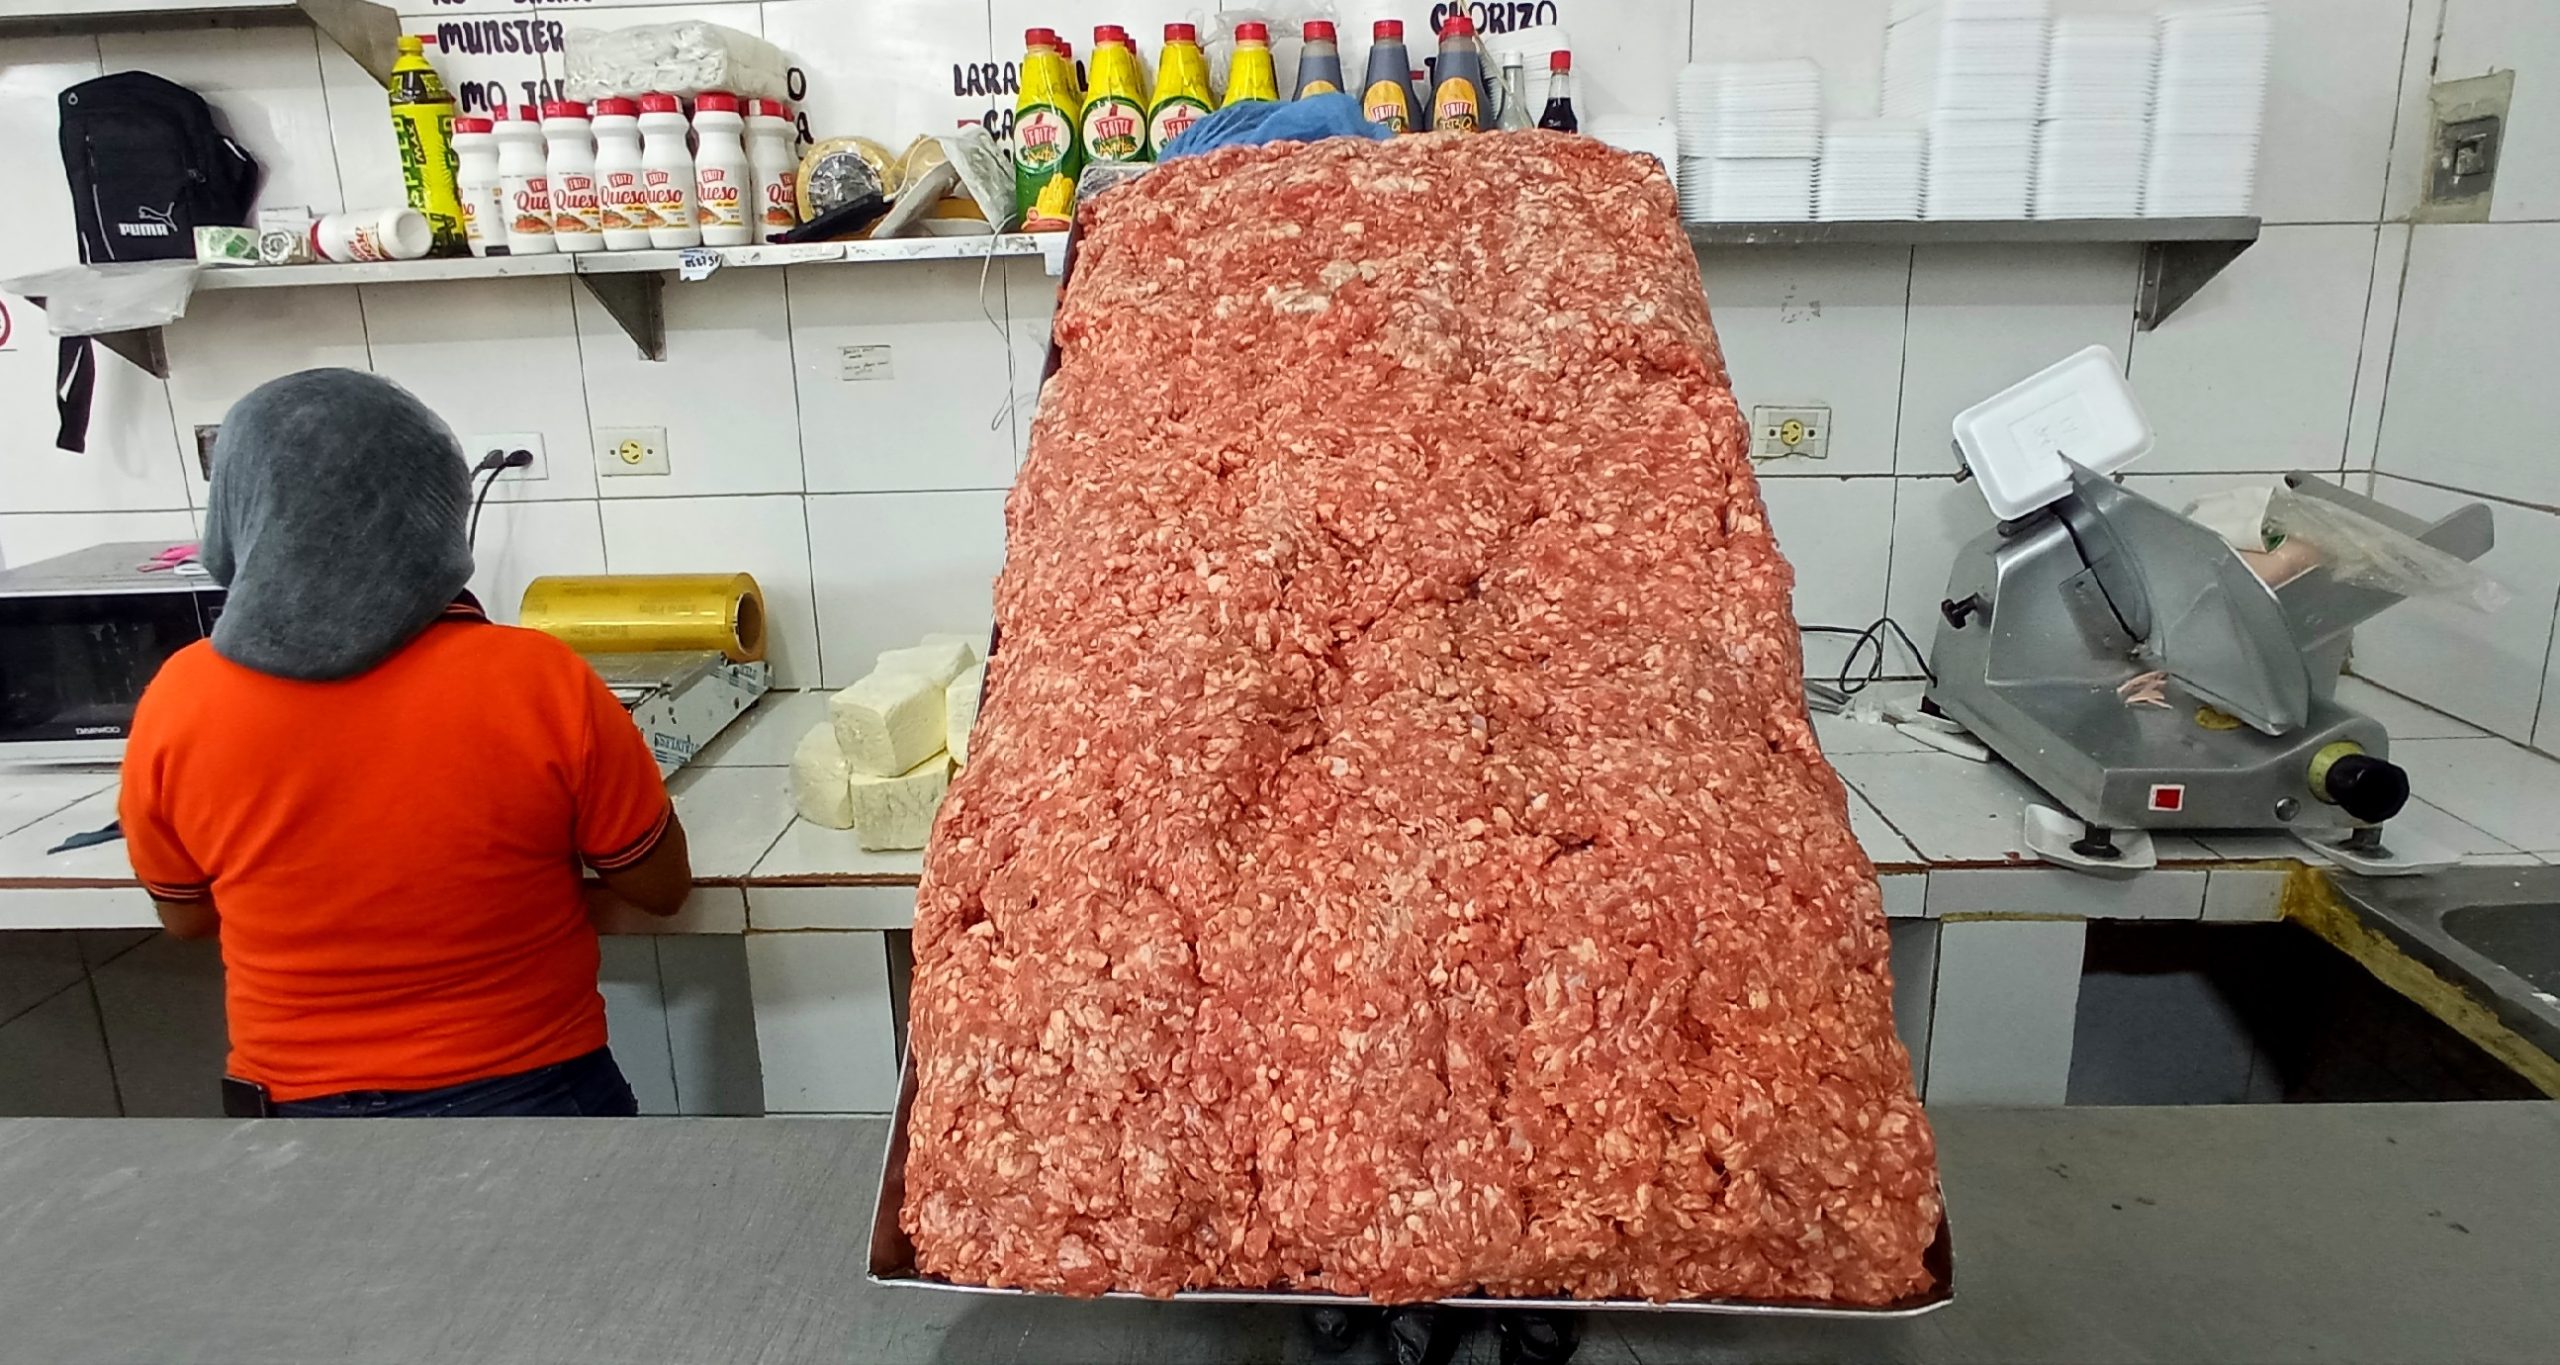 El kilo de carne molida se cotiza en $6